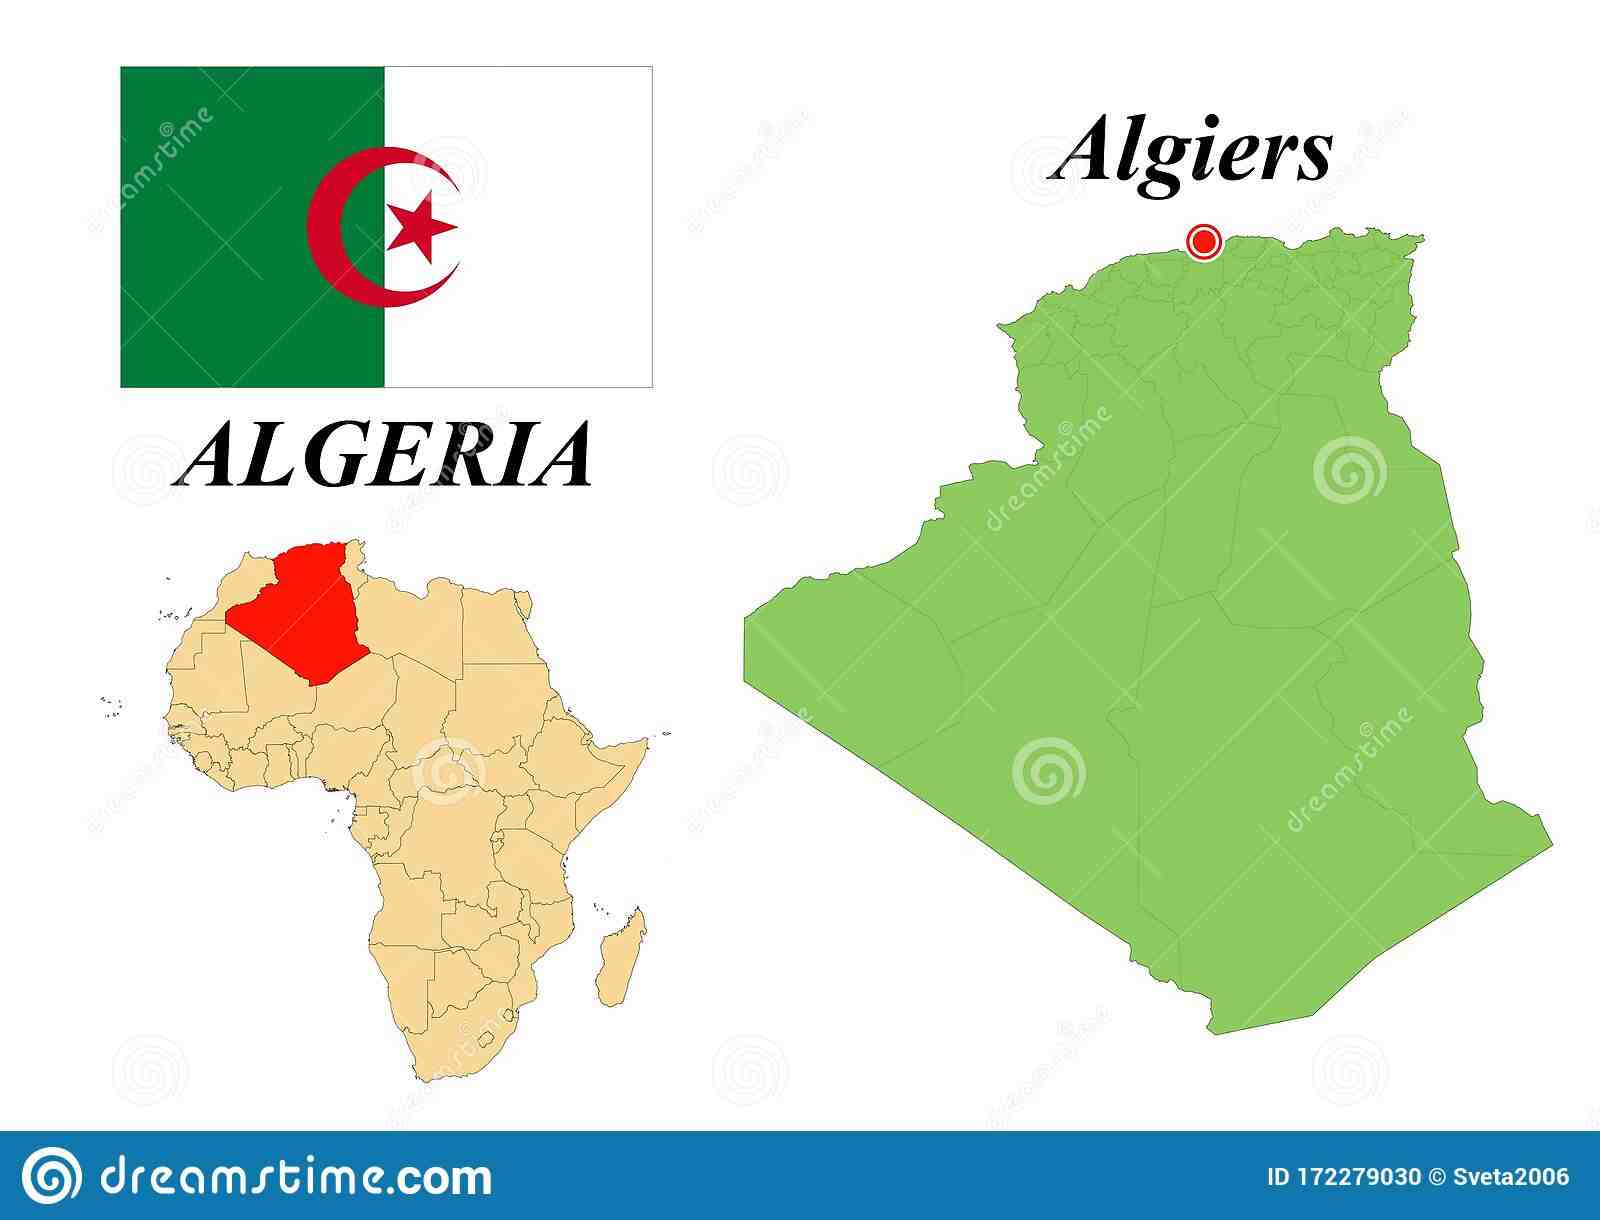 Qui a créé le nom Algérie ?